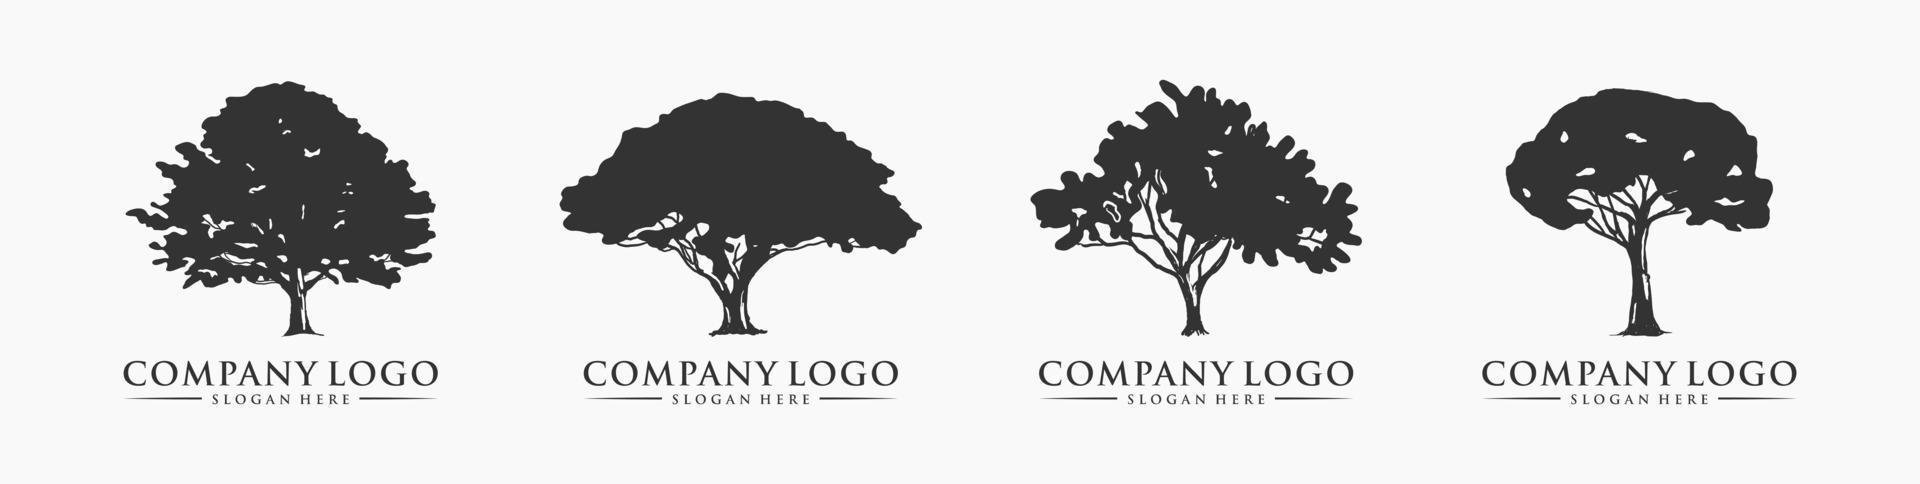 Silhouette-Baum-Logo-Bundle. Vorlage für natürliche Pflanzengartensymbole. perfekt für Firmenlogo. Vektor-Illustration. vektor